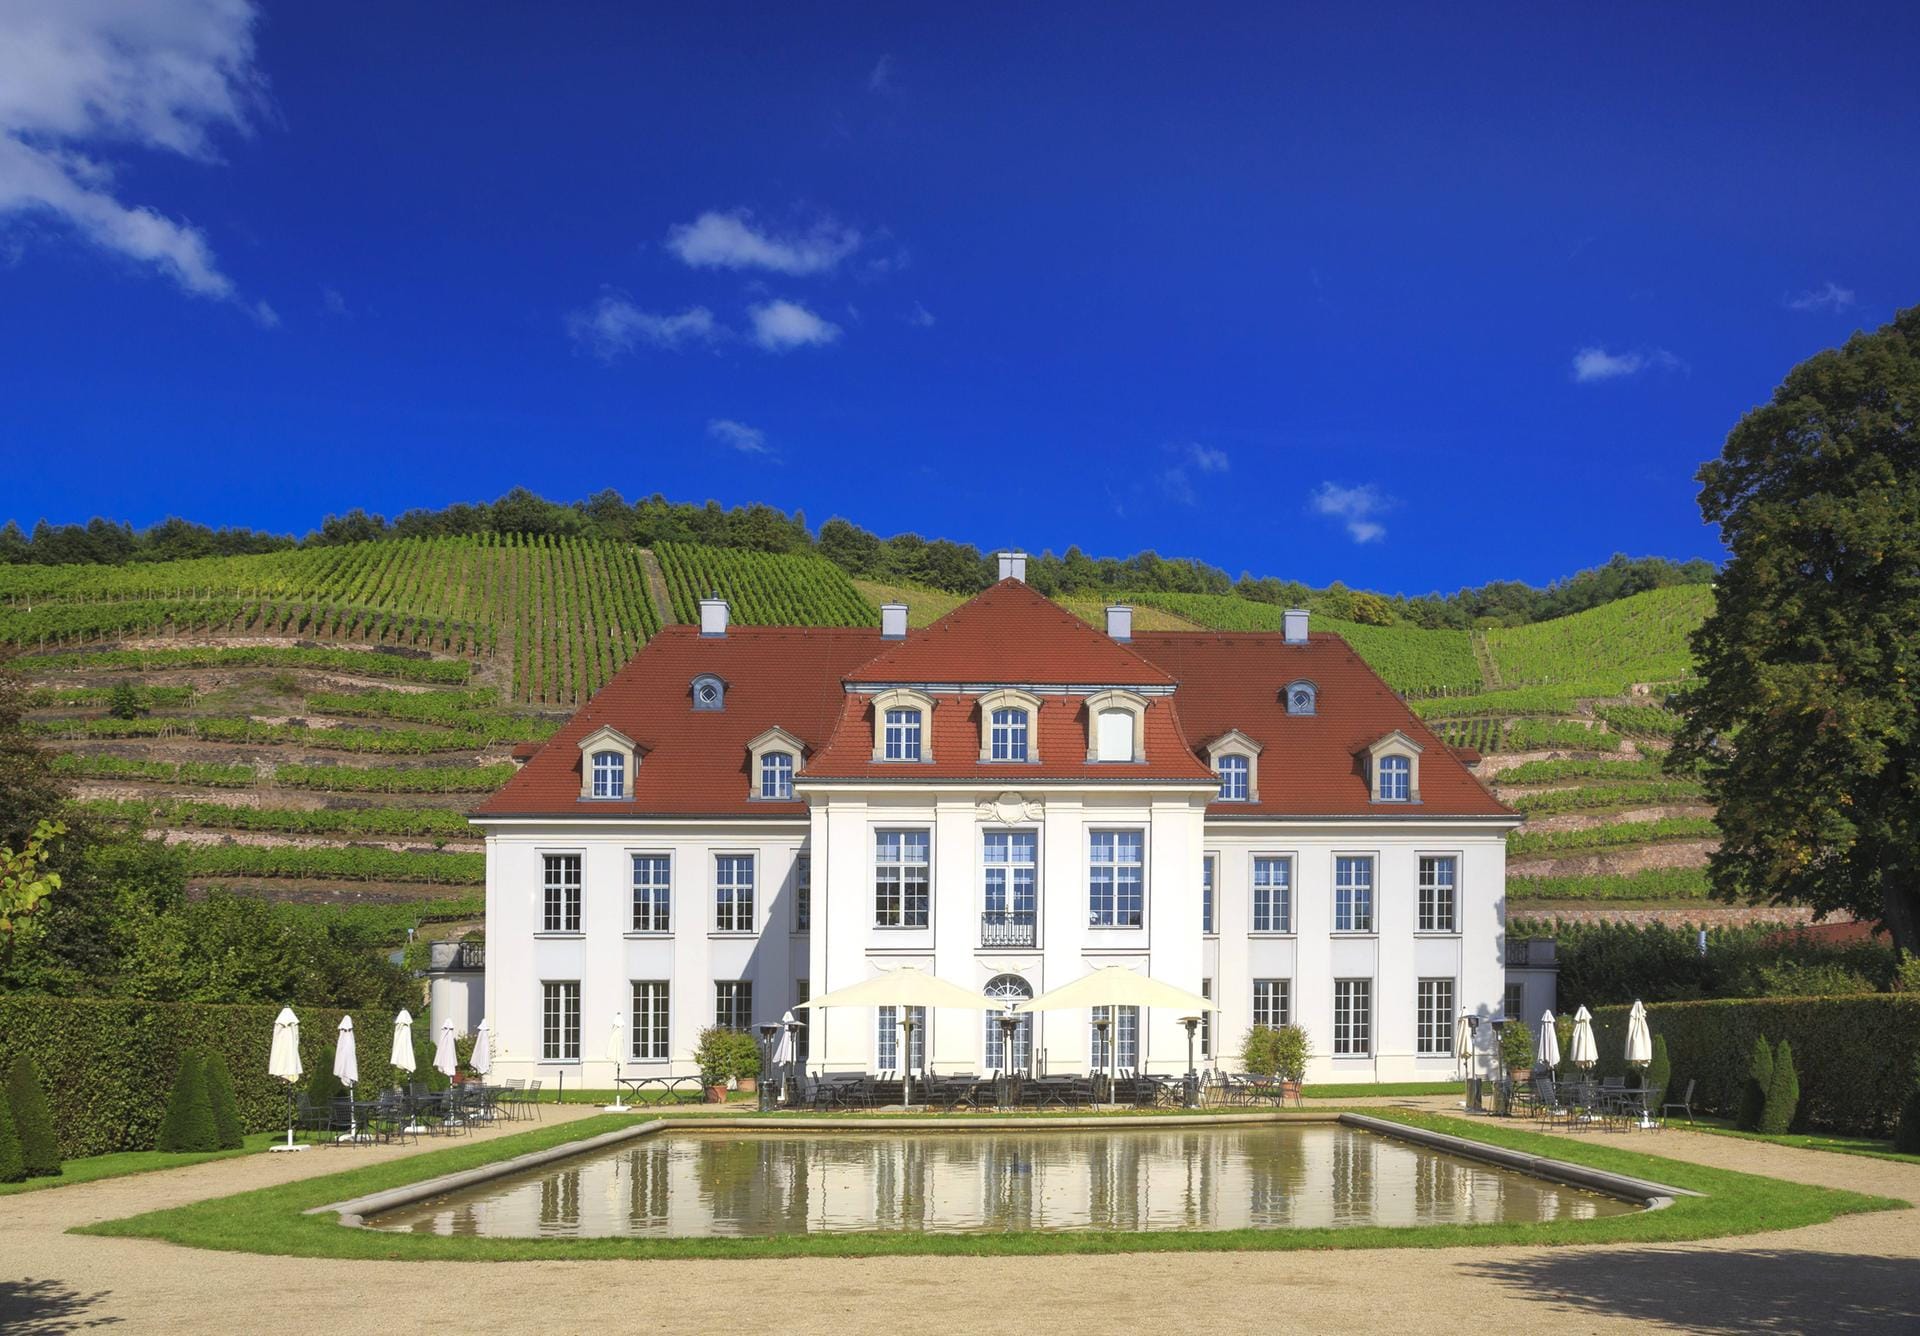 Das Schloss Wackerbarth in Radebeul ist eines der schönsten Weinschloesschen an der Sächsischen Weinstraße zwischen Dresden und Meissen. Seit mehr als 800 Jahre pfegt Sachsen im Elbtal die Weinbautradition.